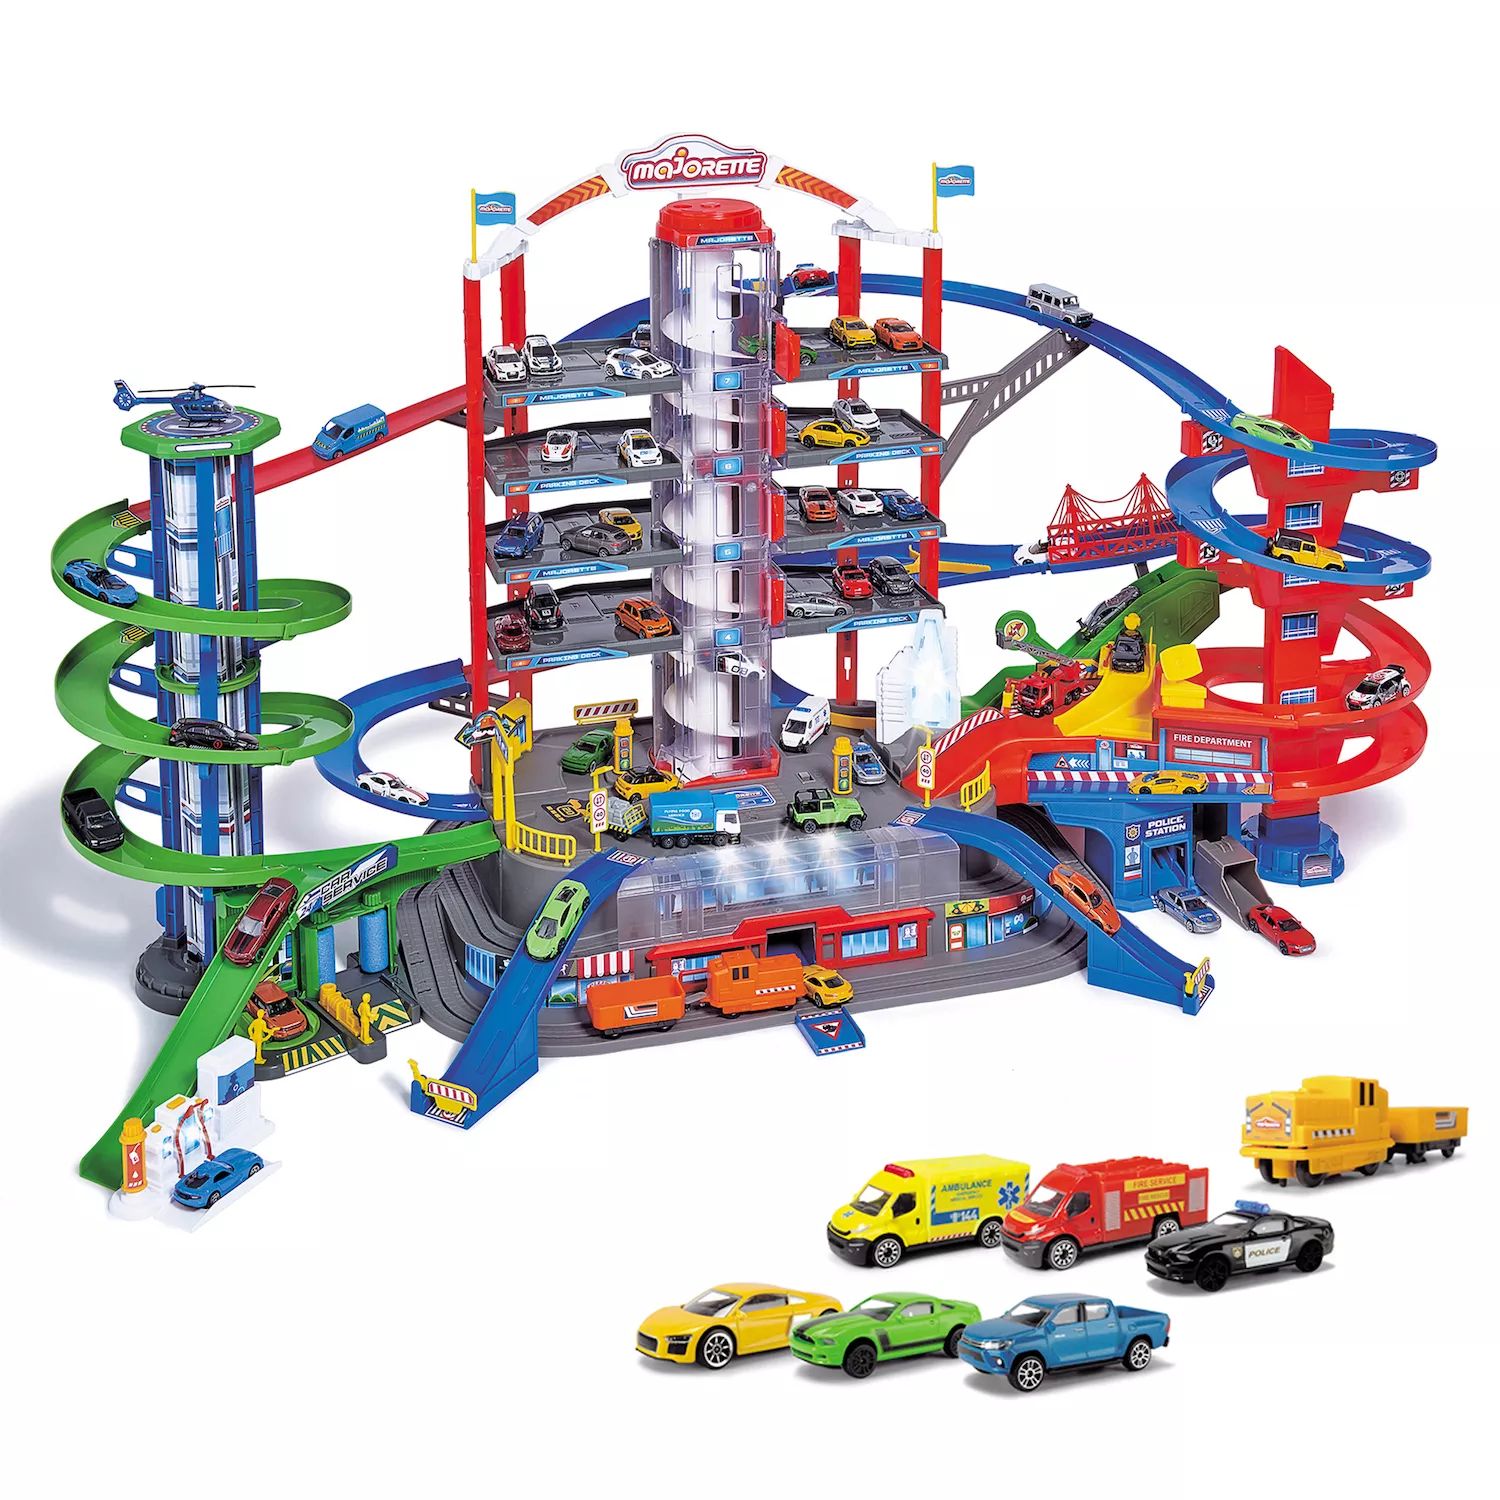 Игровой набор Dickie Toys Majorette Super City Garage с 6 литыми машинками Dickie Toys dickie toys могучий строительный кран на радиоуправлении dickie toys